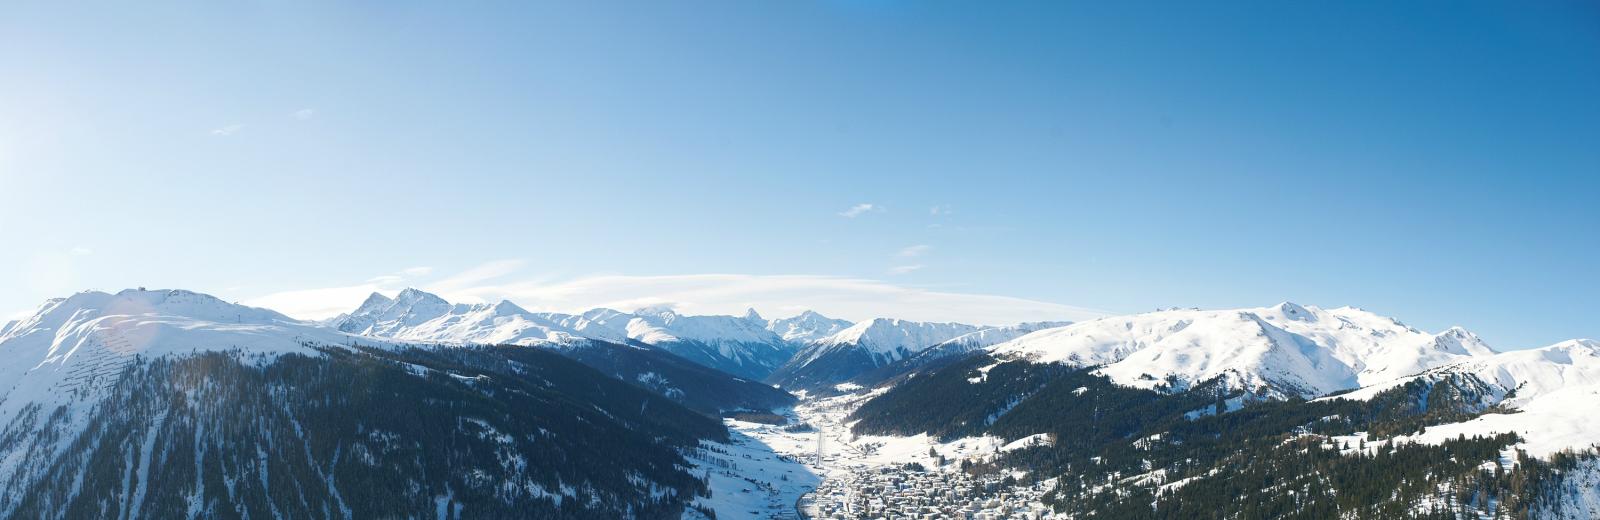 Fotografia aerea attuale di Davos 